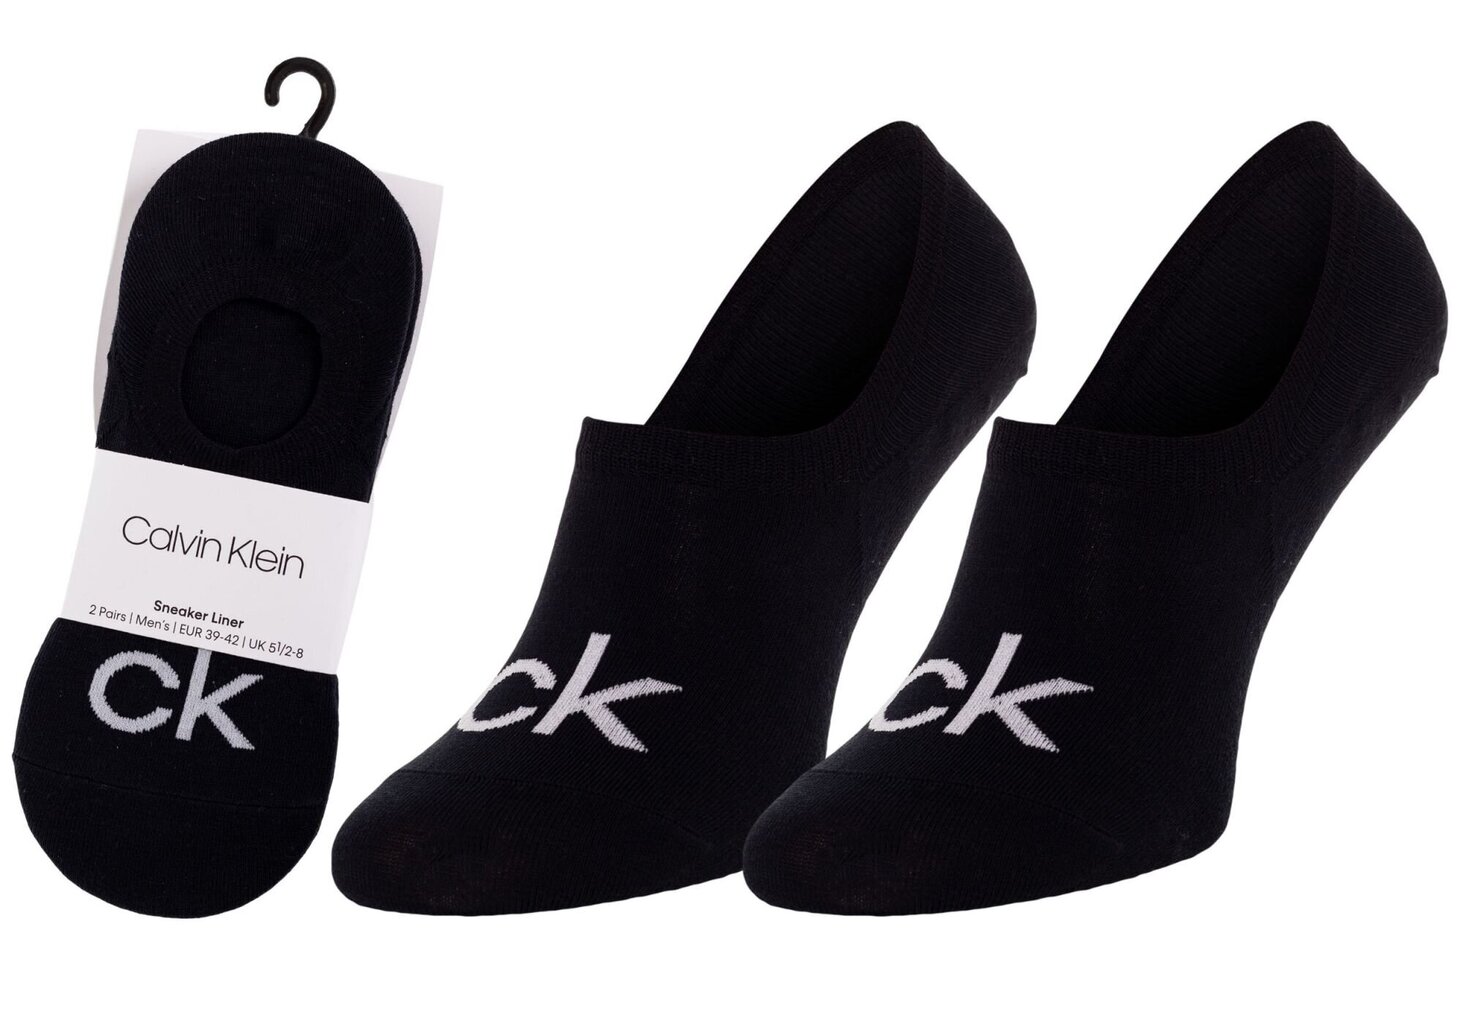 Vyriškos kojinės-pėdutės Calvin Klein, 2 poros, 100001867 001 17039 kaina ir informacija | Vyriškos kojinės | pigu.lt